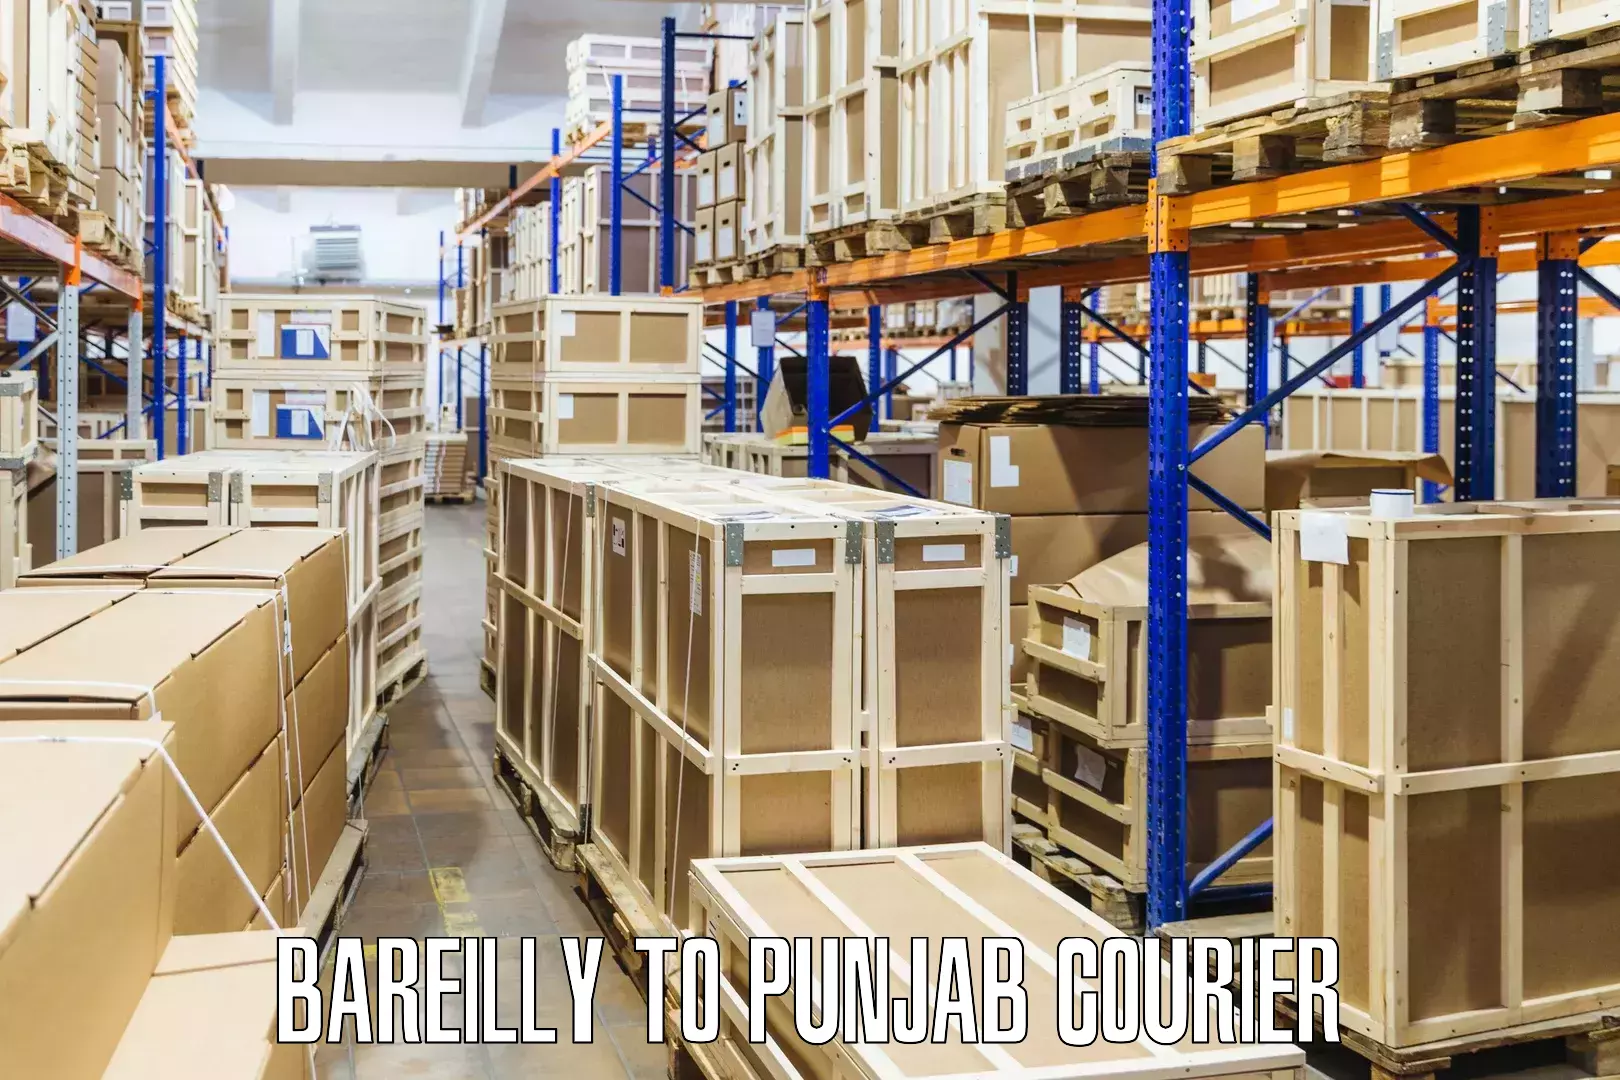 Customized shipping options Bareilly to Central University of Punjab Bathinda